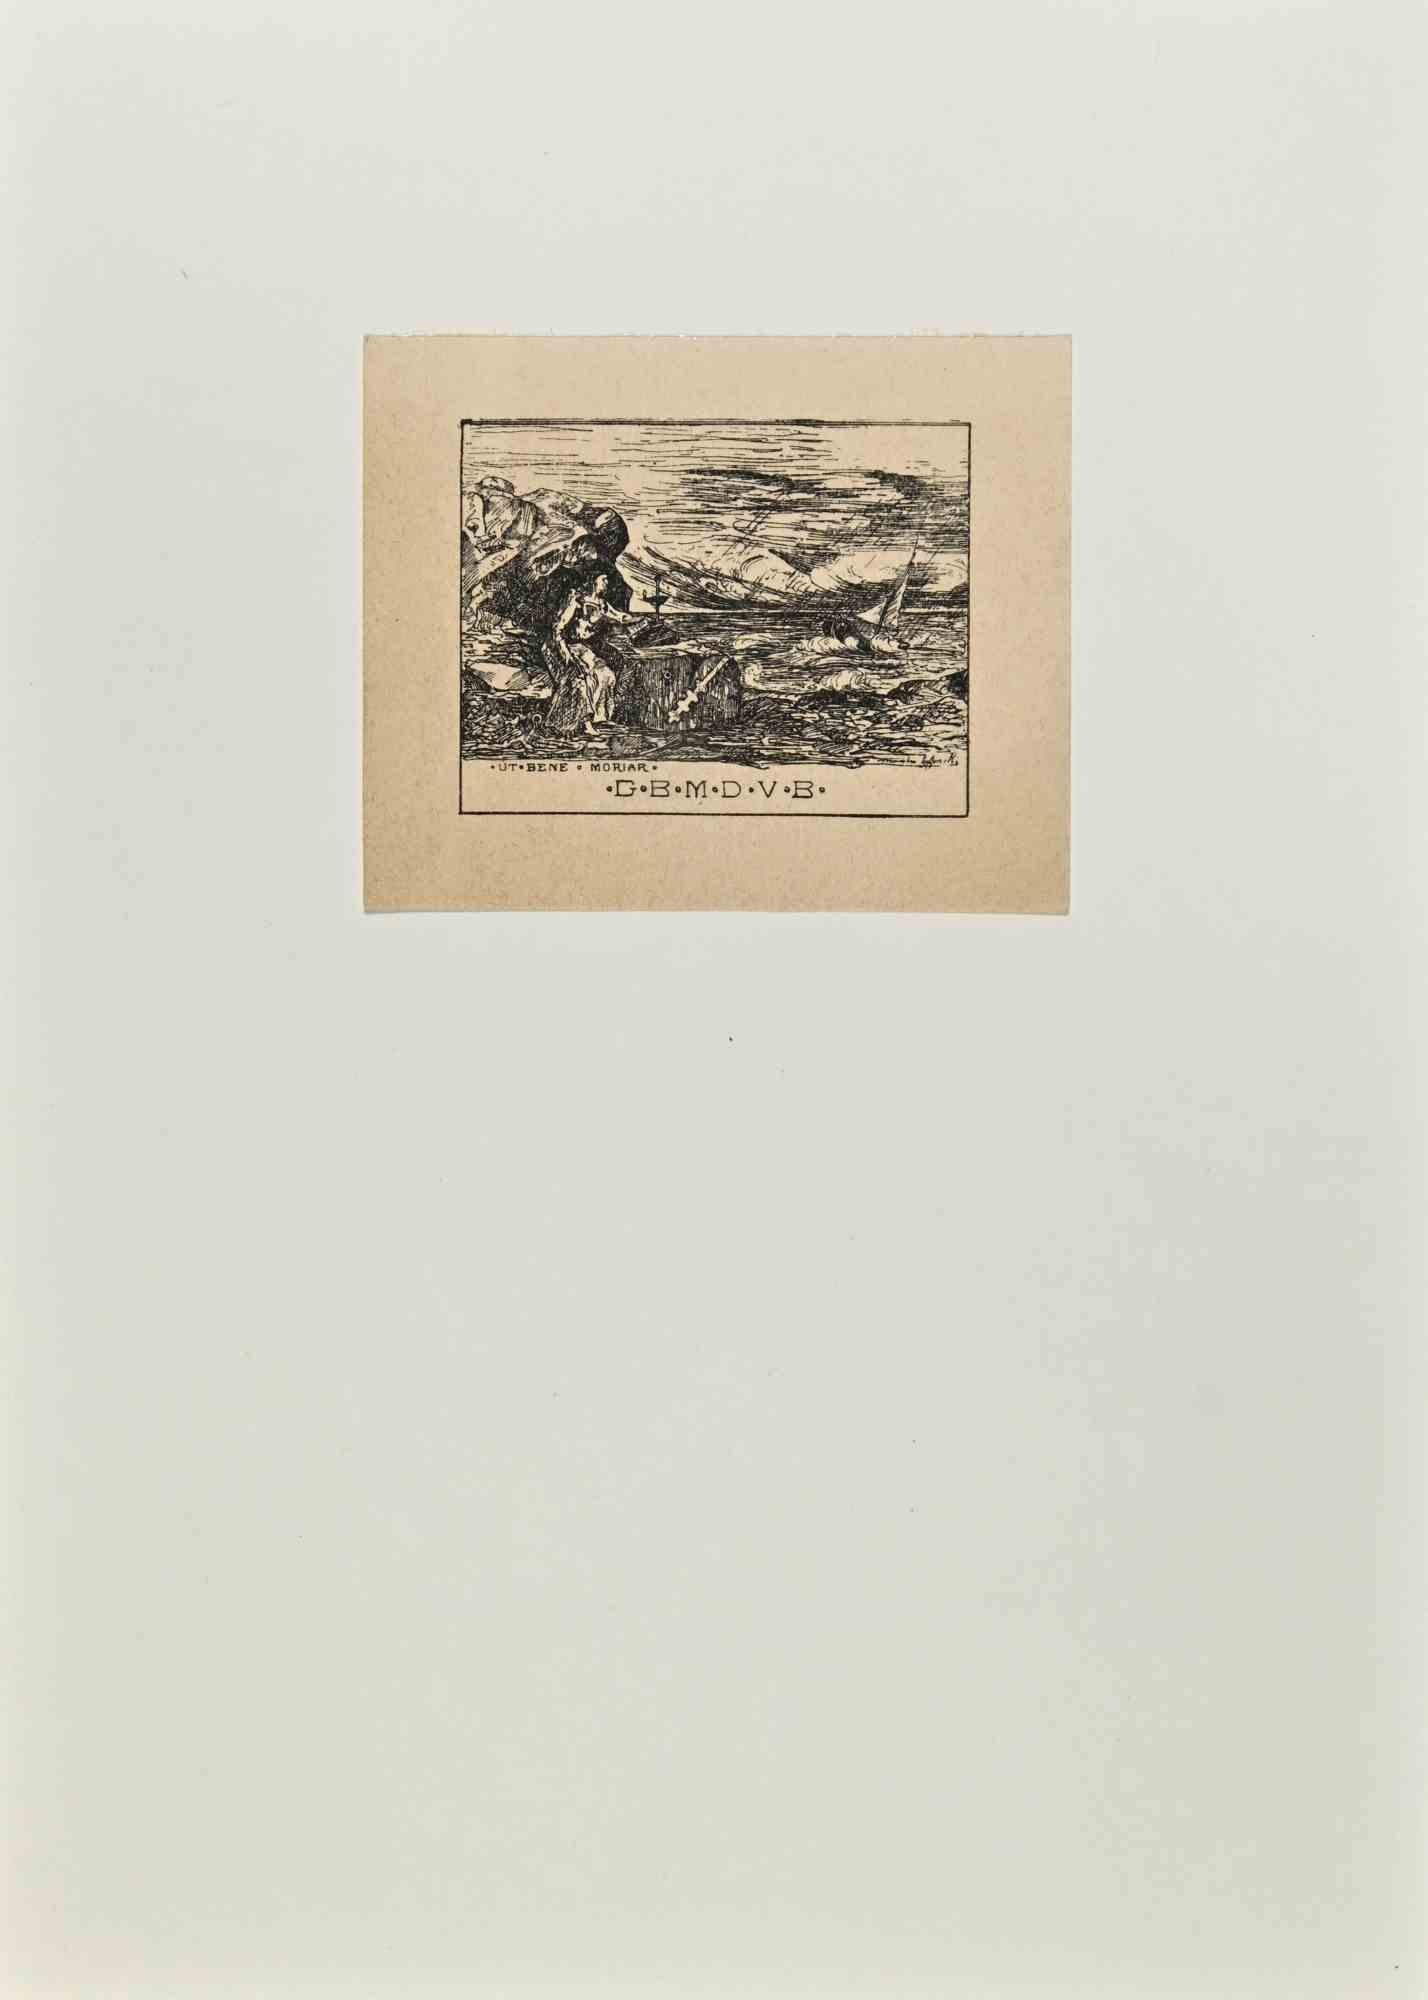 Ex-Libris - G.B.M.D.V.B. - Woodcut - Mid 20th Century